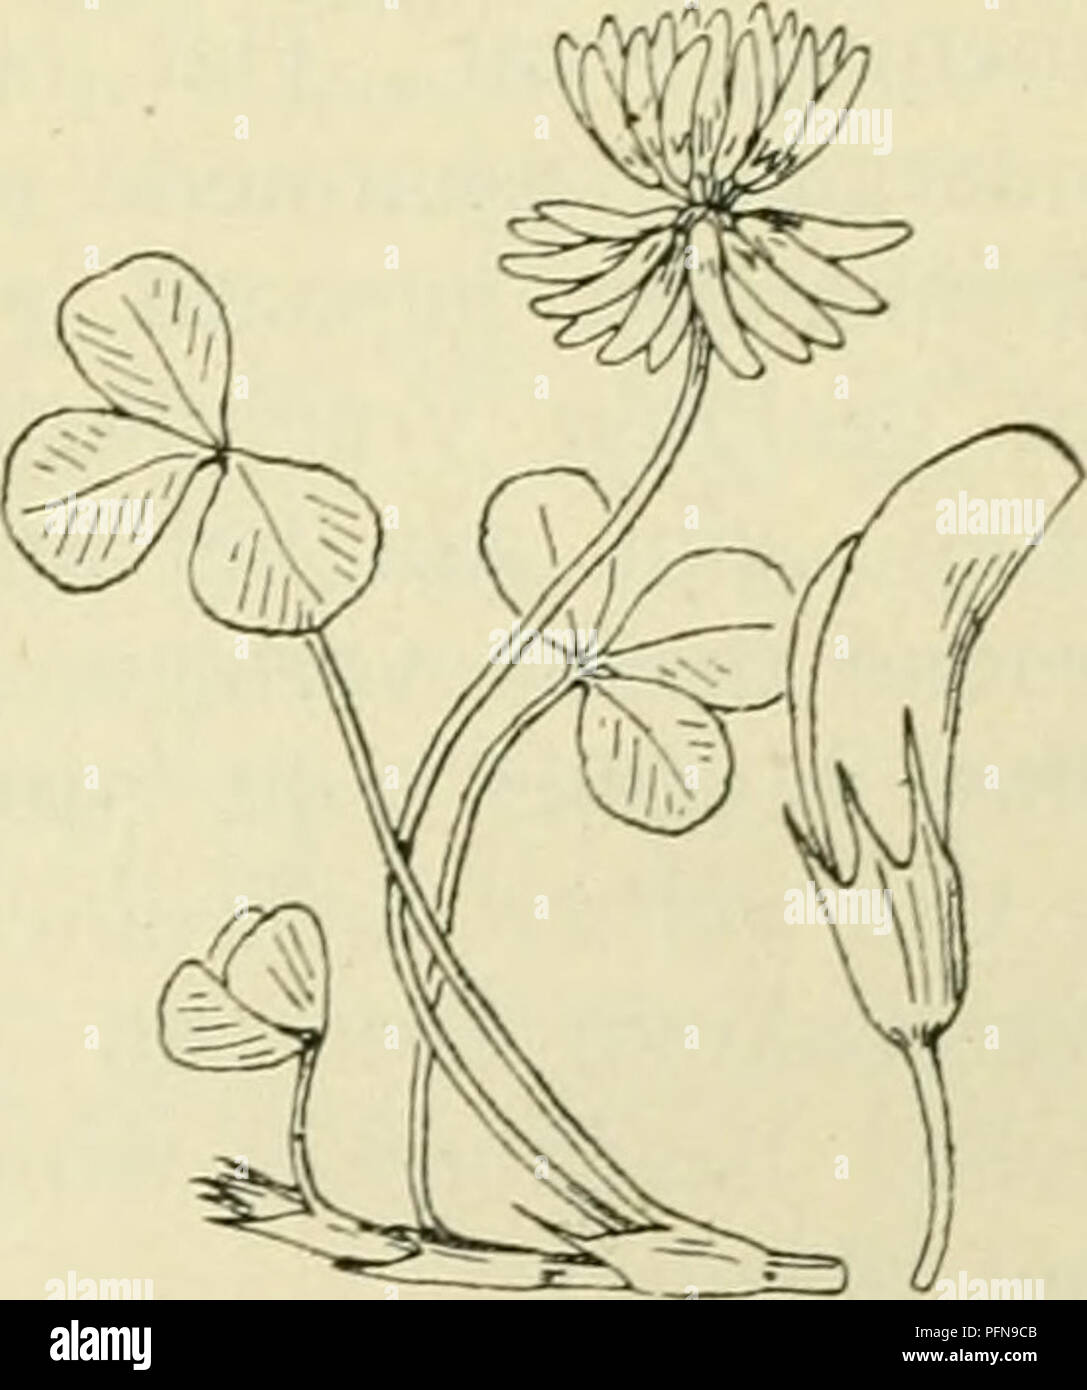 De flora van Nederland. Plants. Trifolium elegans Fig. 781. De var. komt in velden ons is zij waarschijnlijk. T. répensijL Witte k 1 aver (fig. 782). Deze plant is onbehaard,